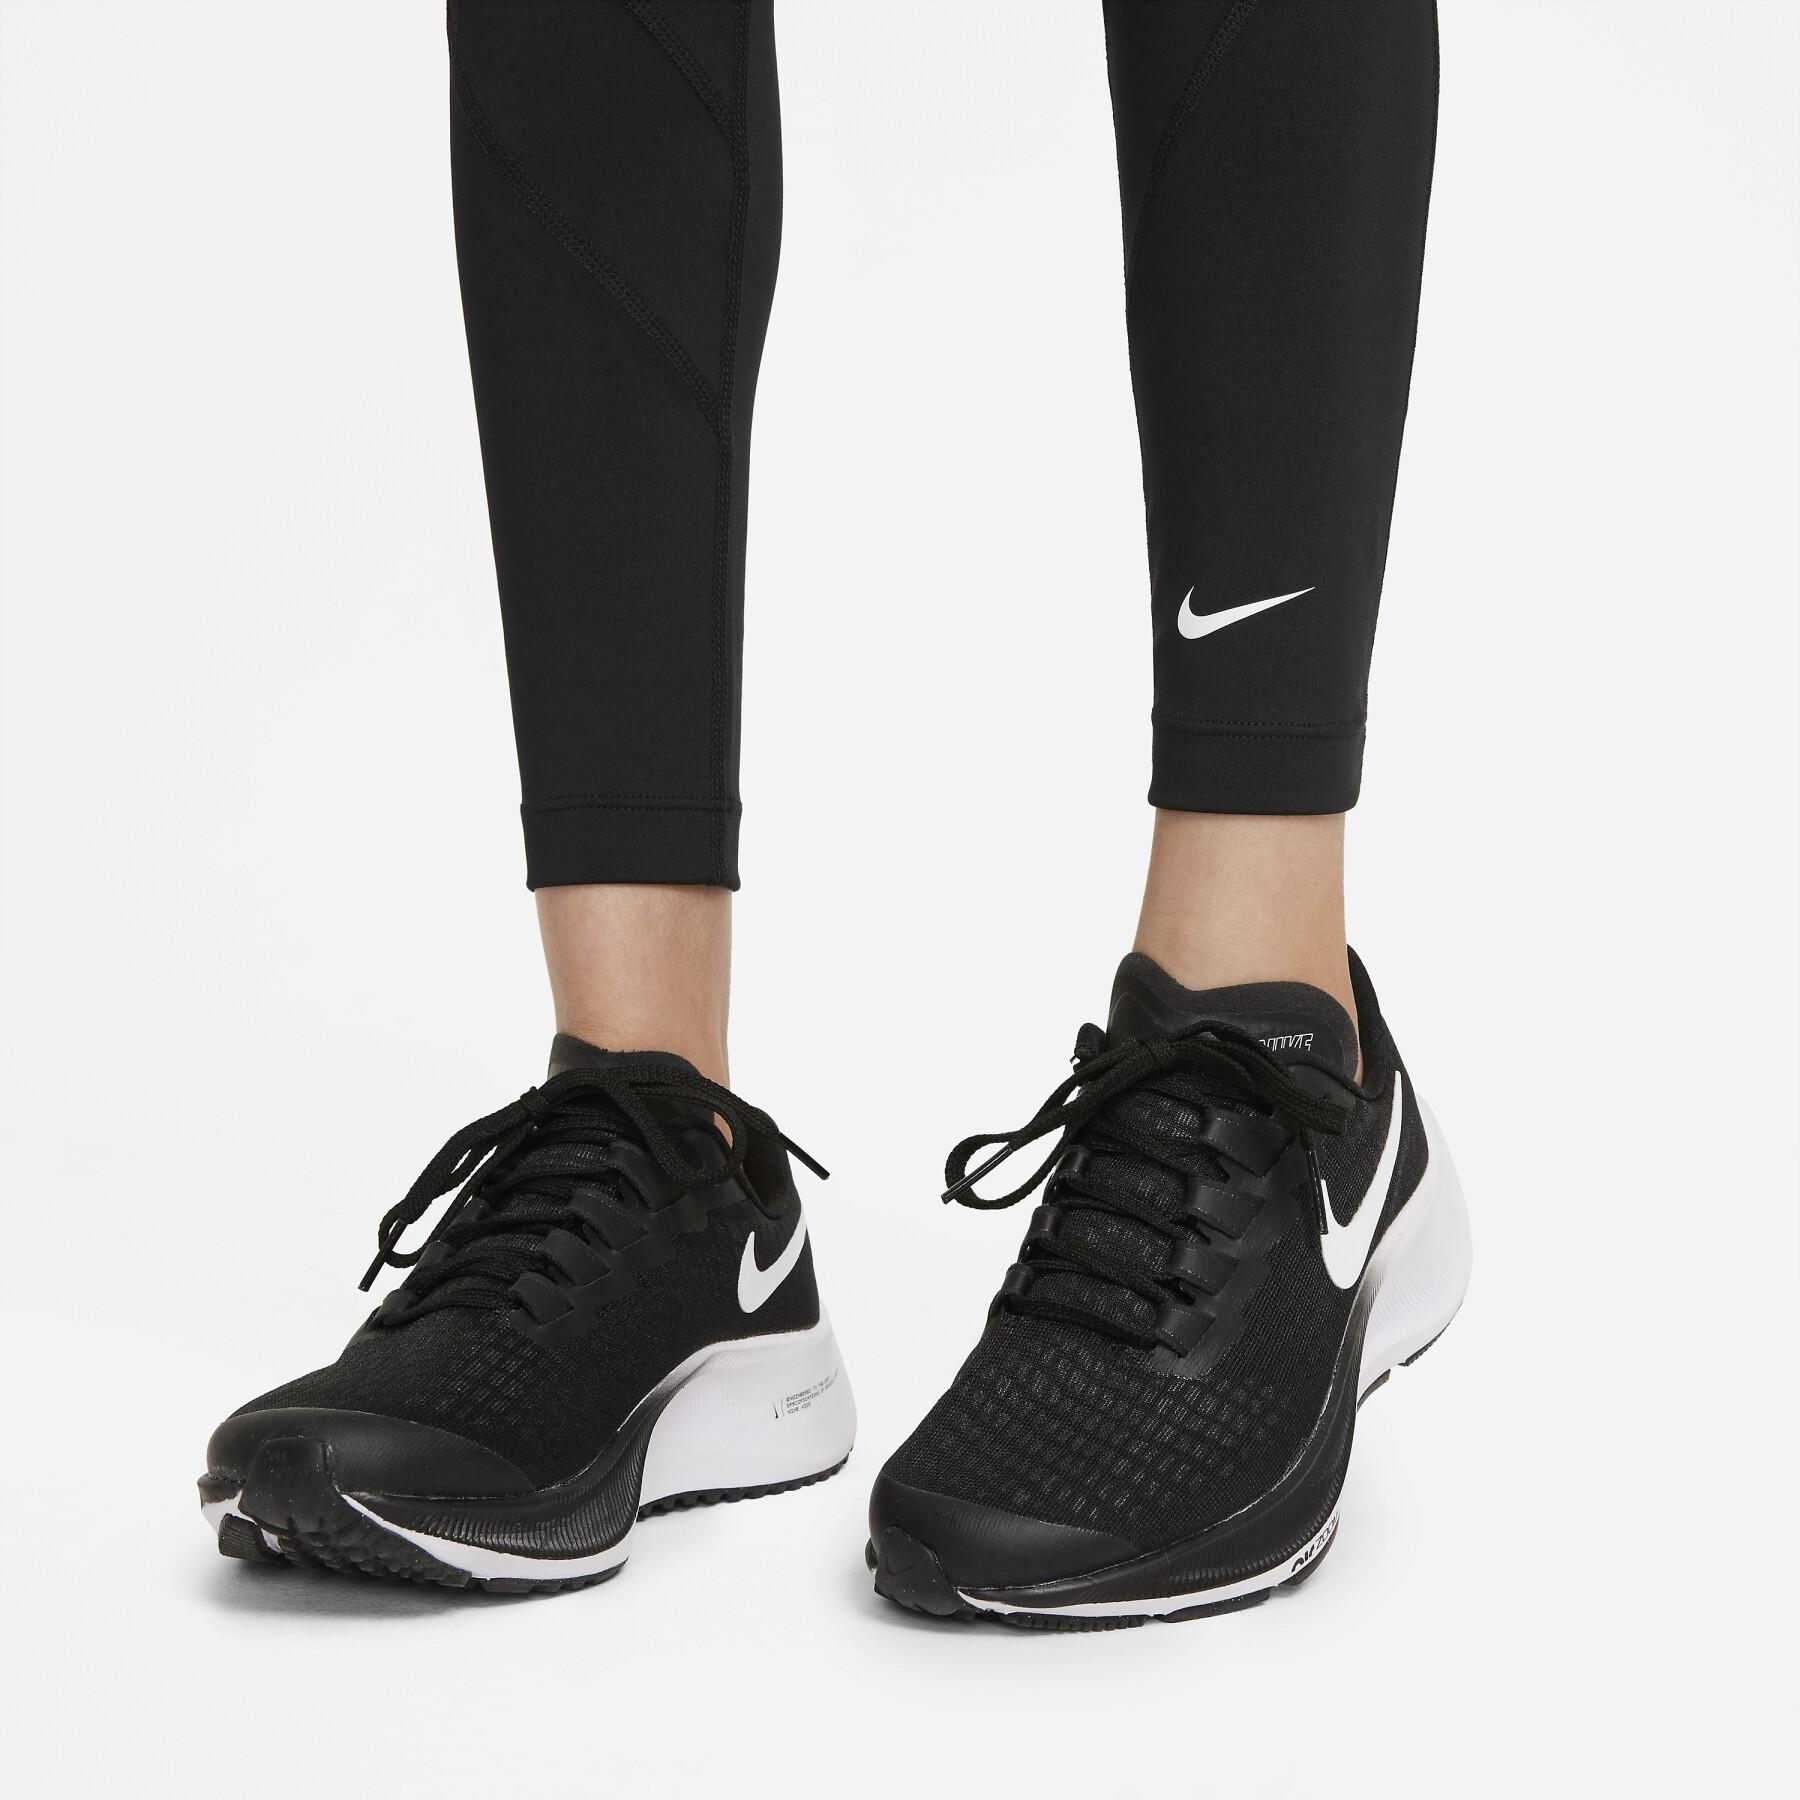 Legging fille Nike One